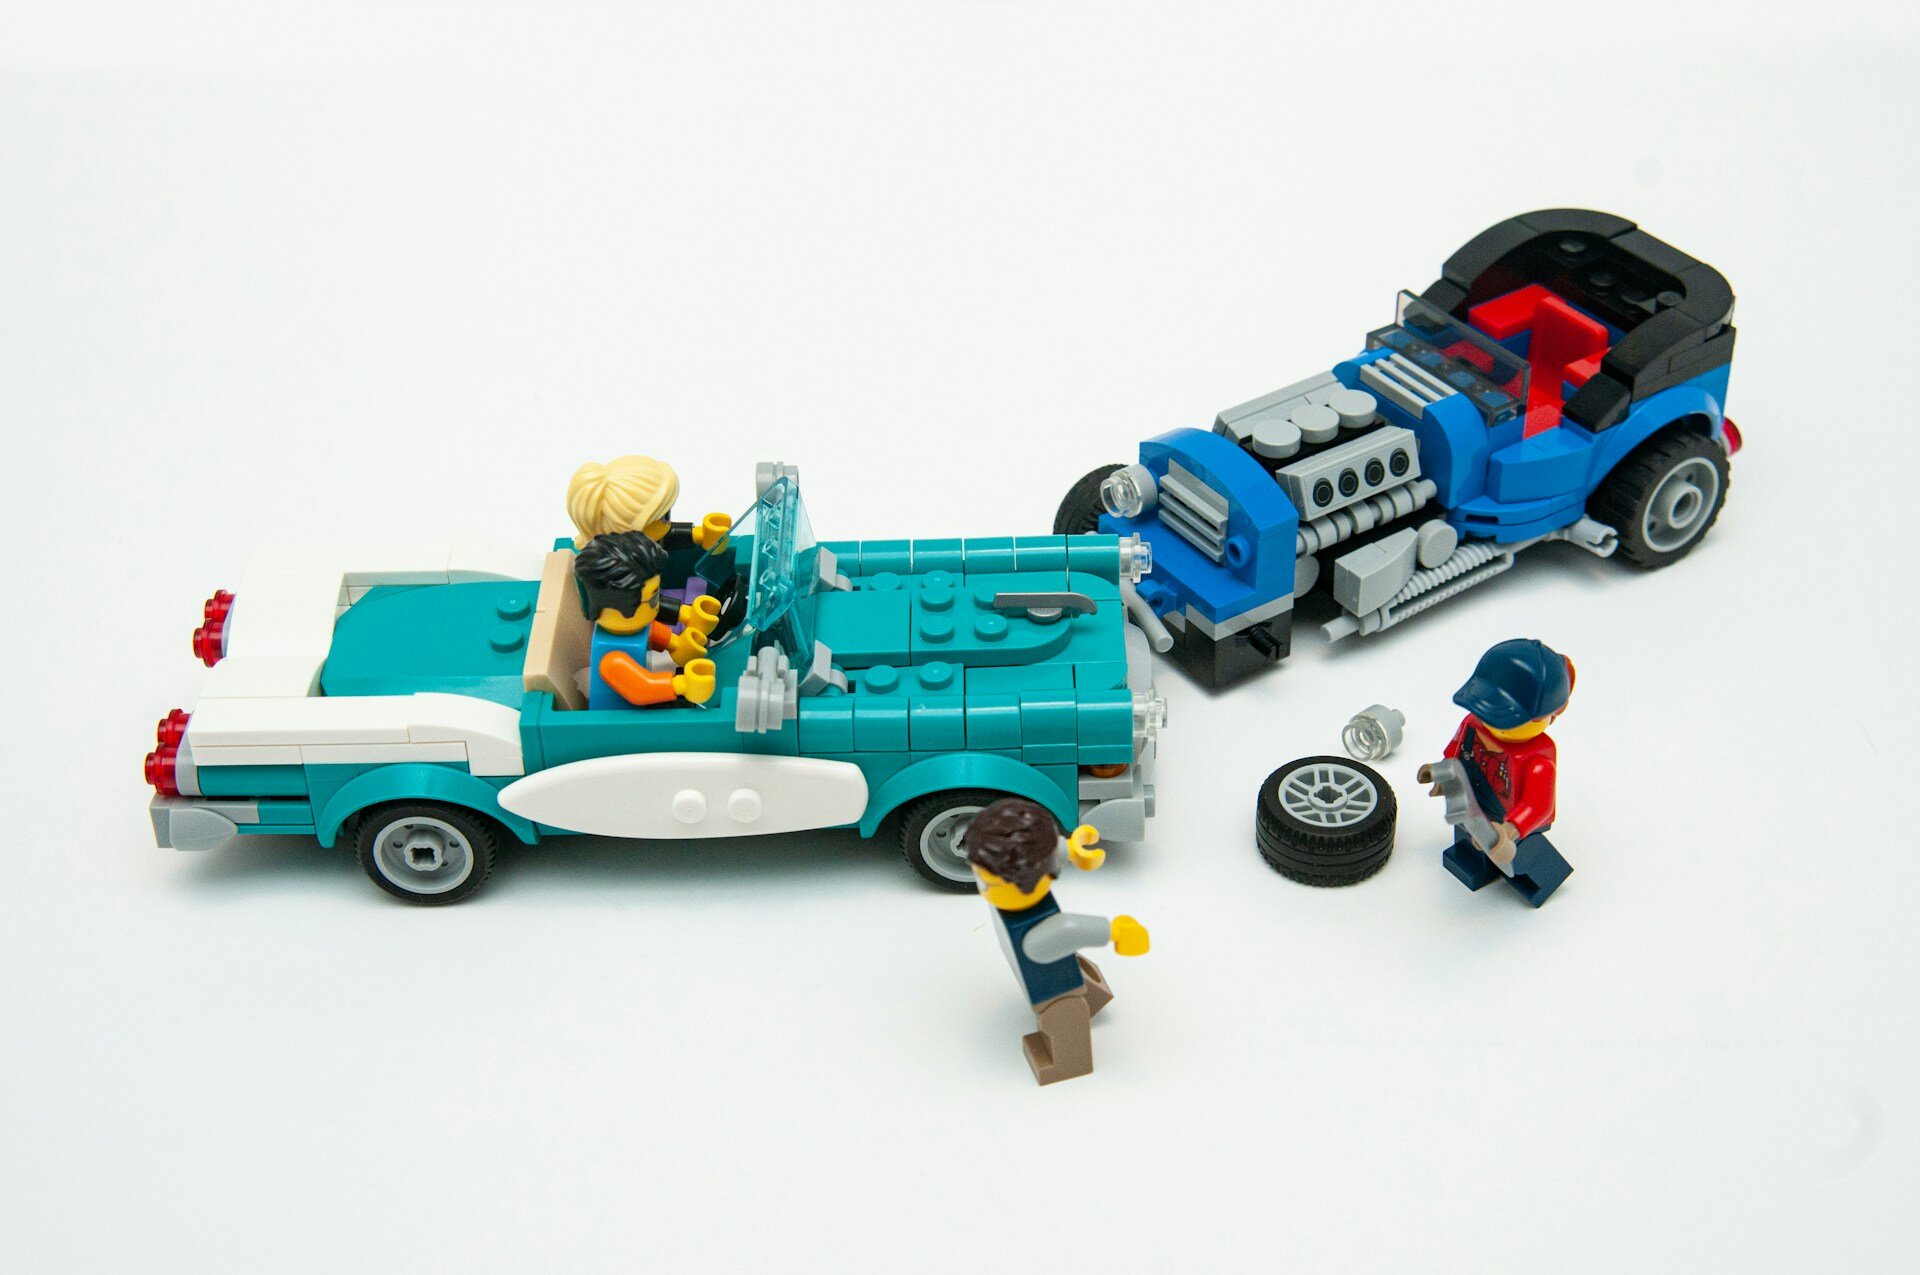 Auf dem Bild sieht man 2 mit Legosteinen zusammengebaute Autos, die einen Unfall hatten. Im Auto sitzen zwei Legofiguren. | © Matt Hudson/Unsplash